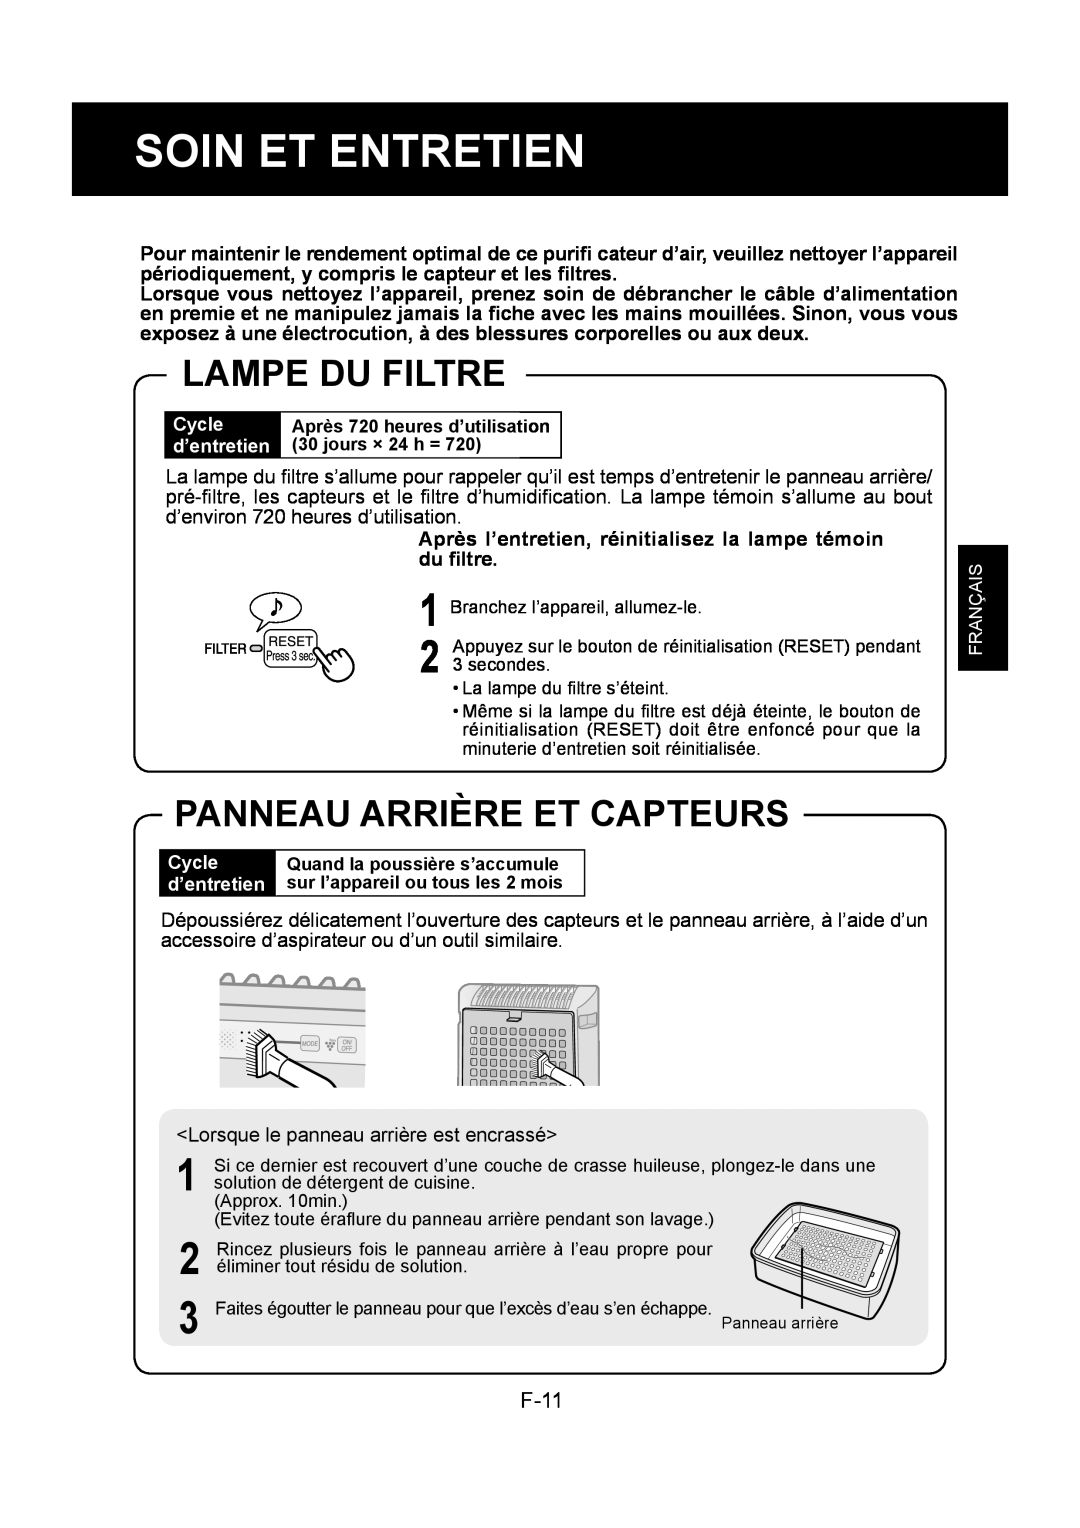 Sharp KC-830U operation manual Soin Et Entretien, Lampe Du Filtre, Panneau Arrière Et Capteurs, F-11, 1 2 3 